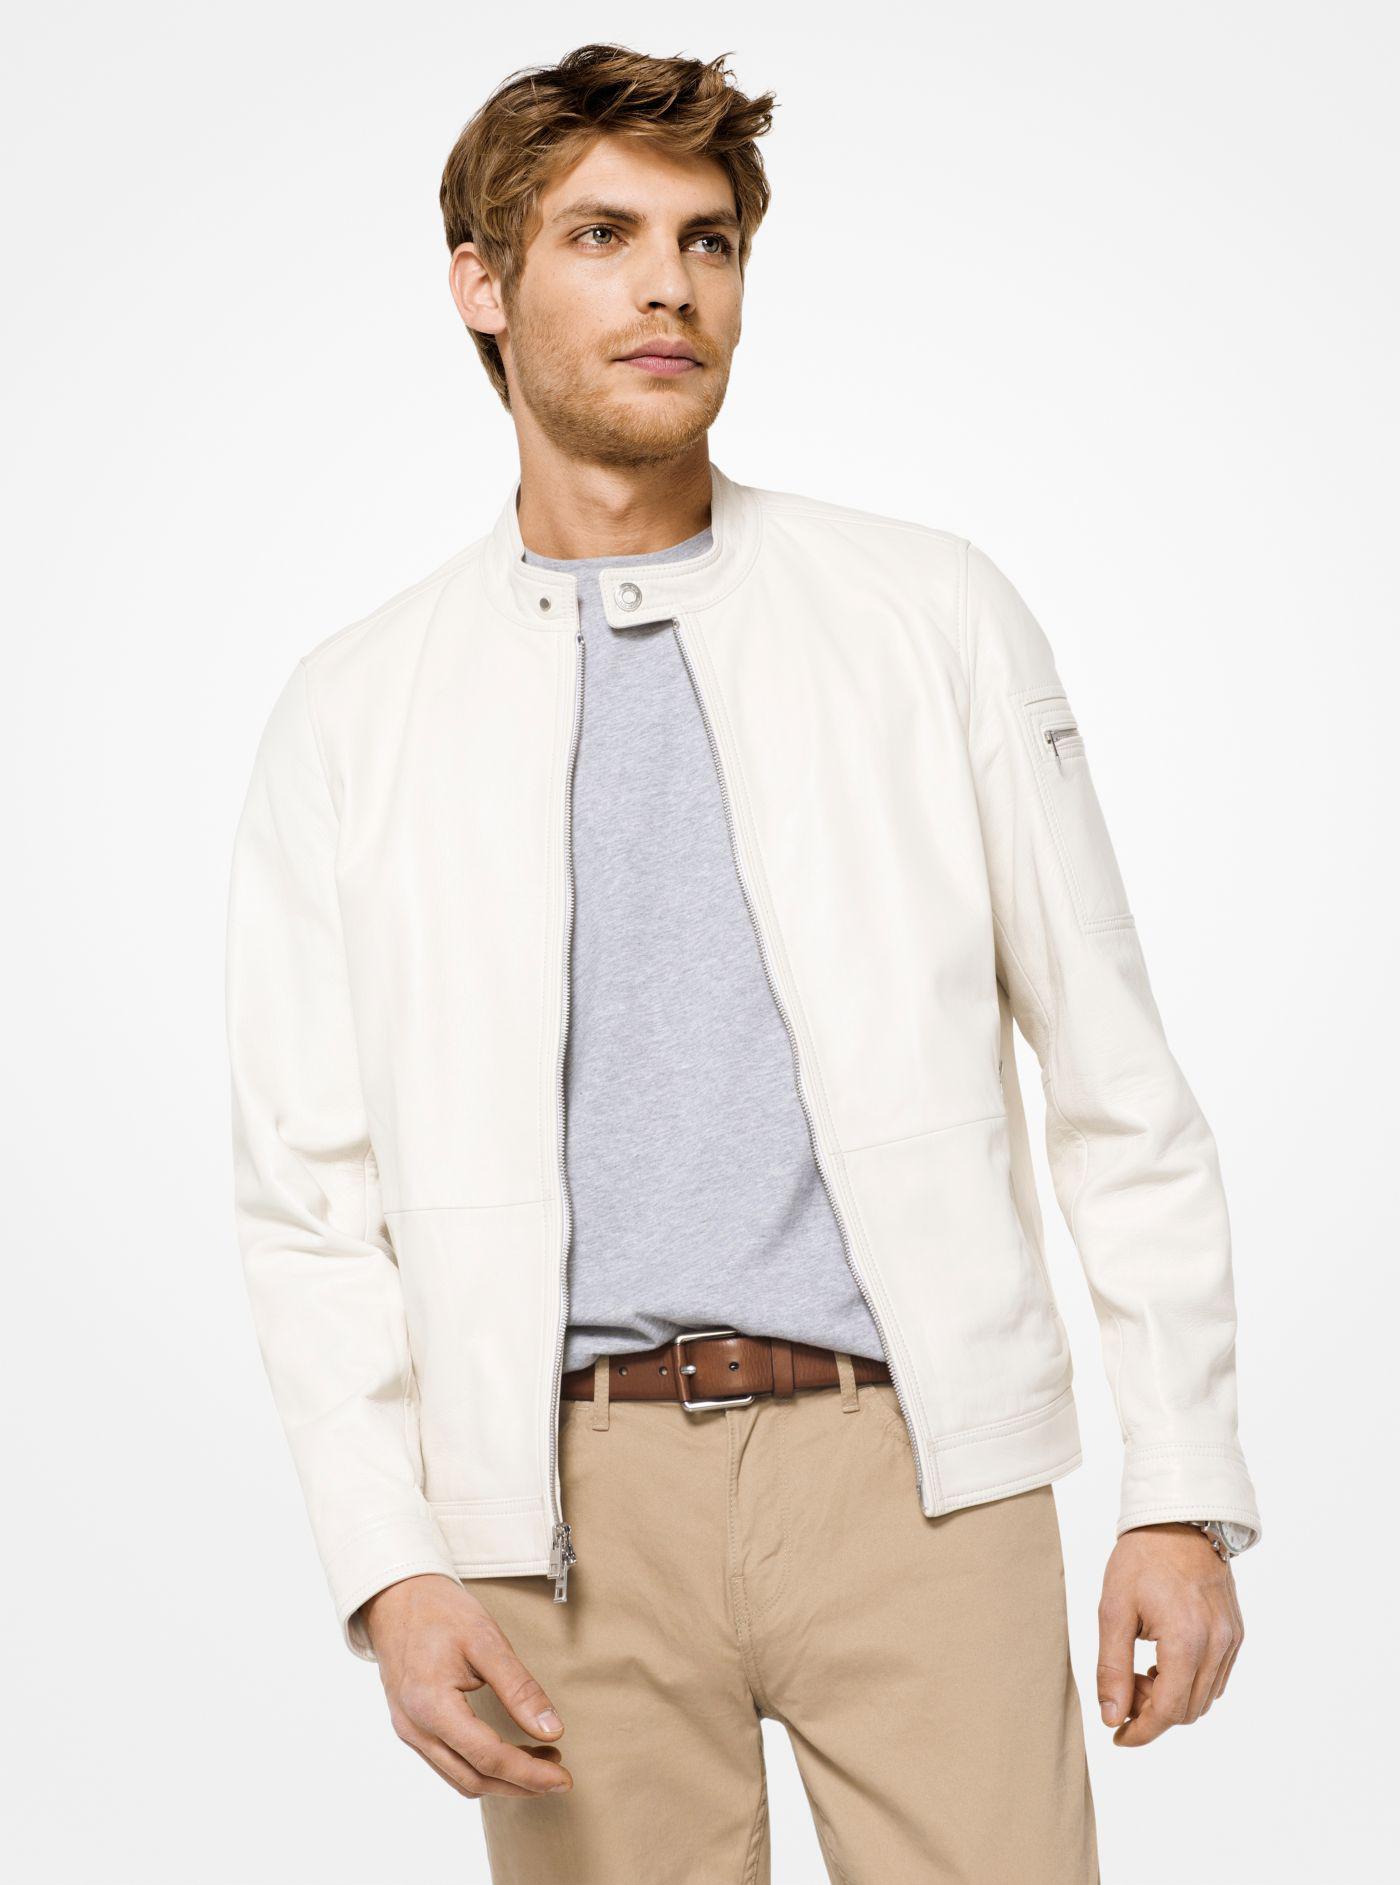 white michael kors men's jacket